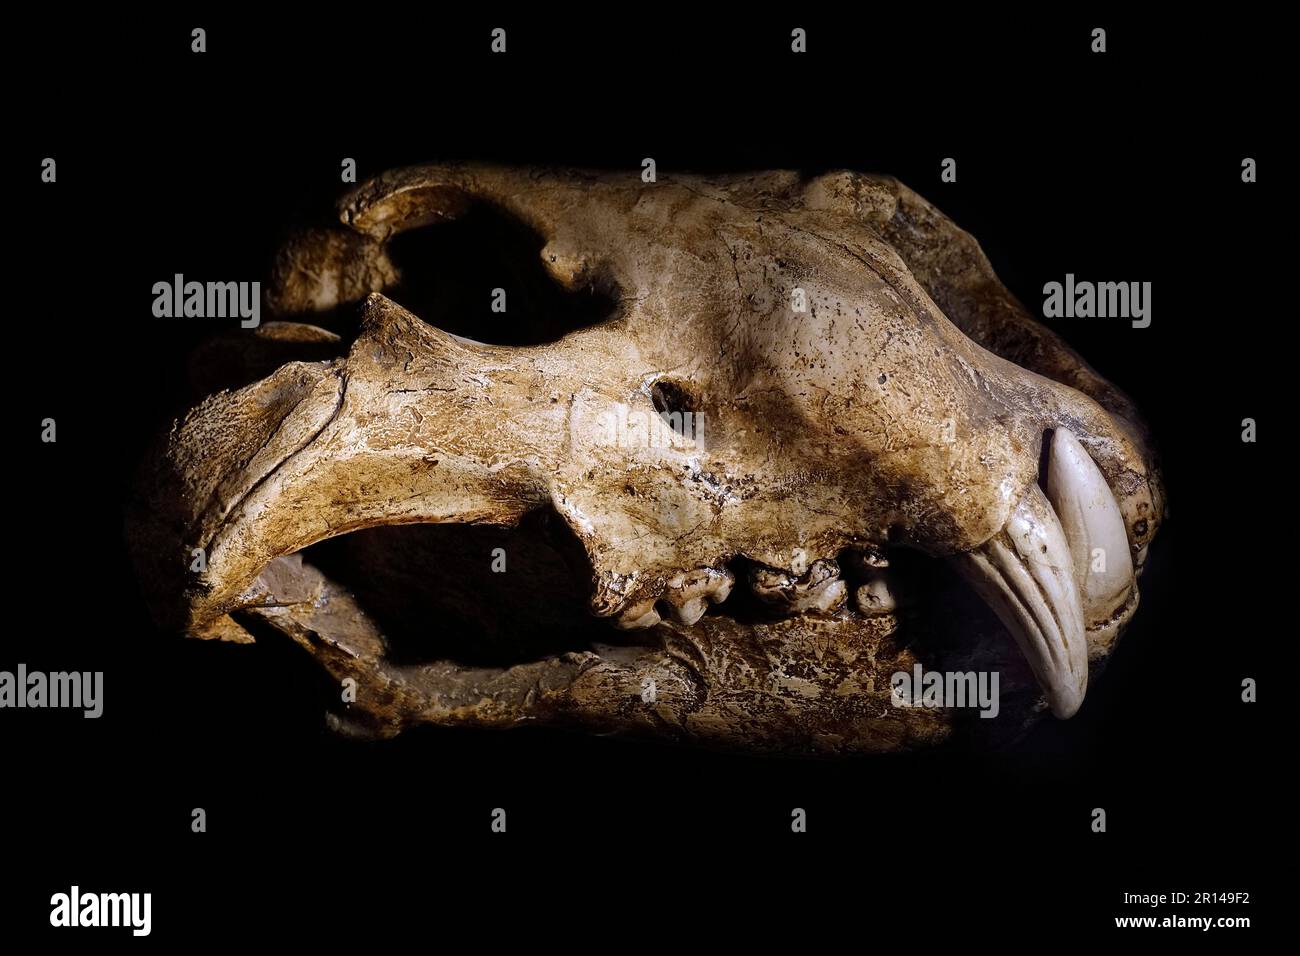 Eurasian cave lion (Panthera spelaea), skull fossil from the Late Pleistocene, Europe Stock Photo